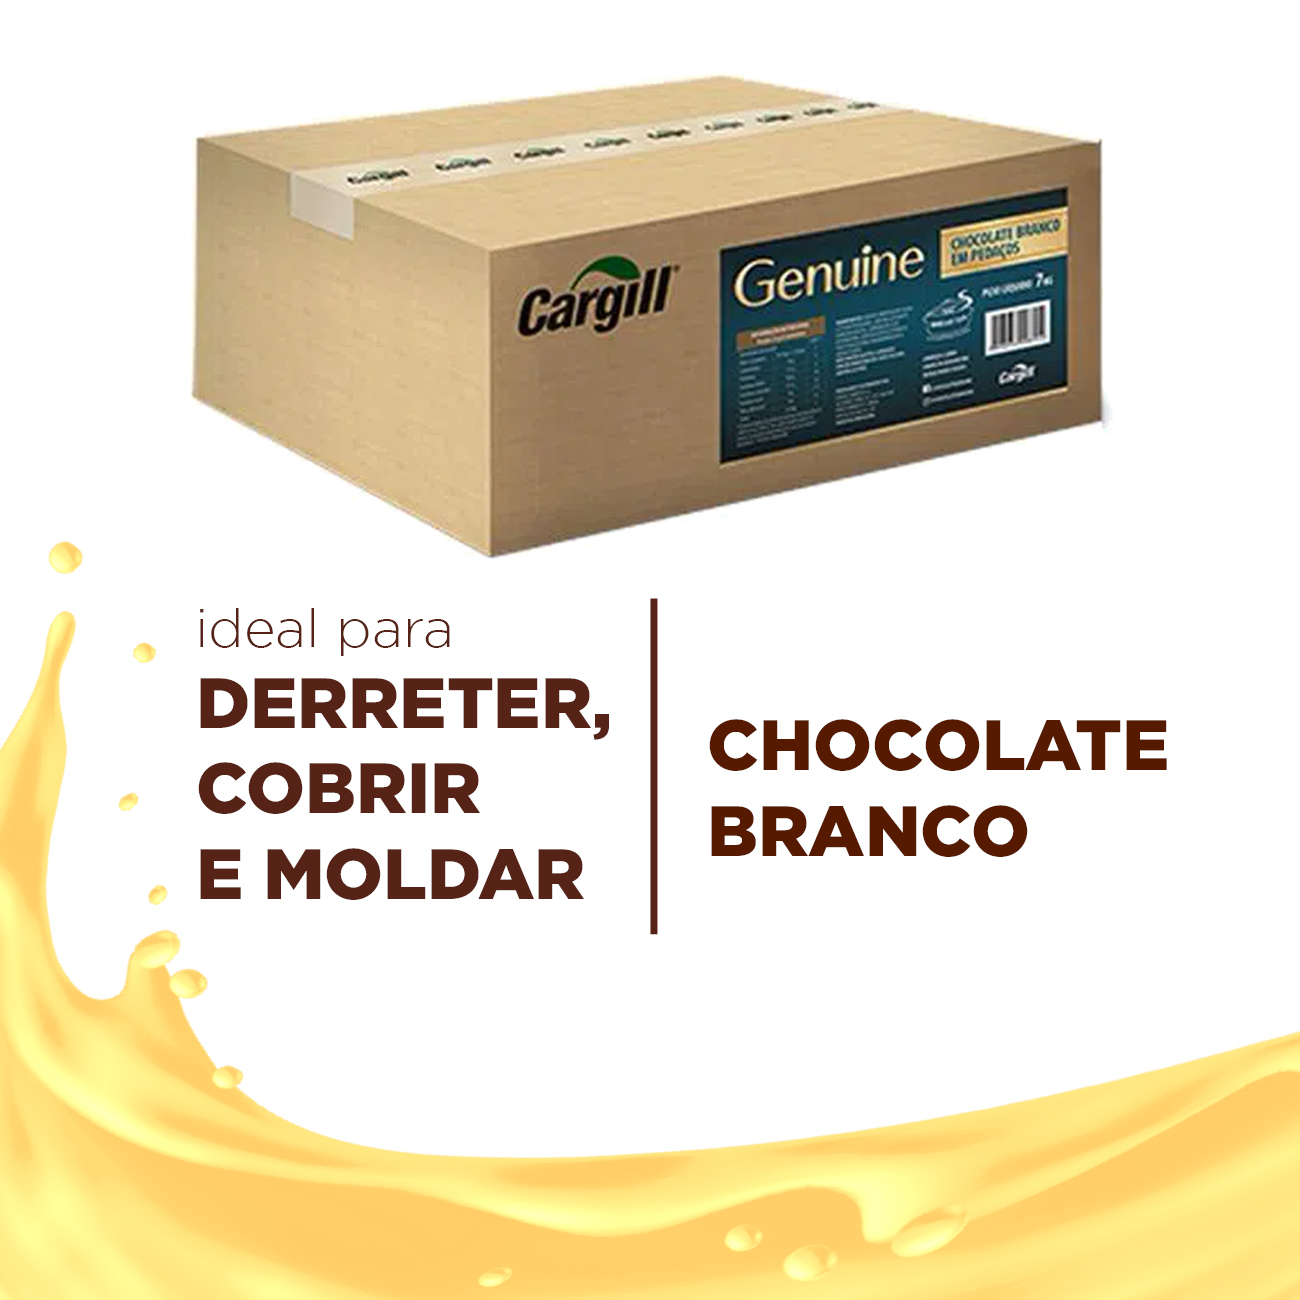 Cobertura de Chocolate em Raspas Cargill Genuine Kibbles Branco Caixa 7kg